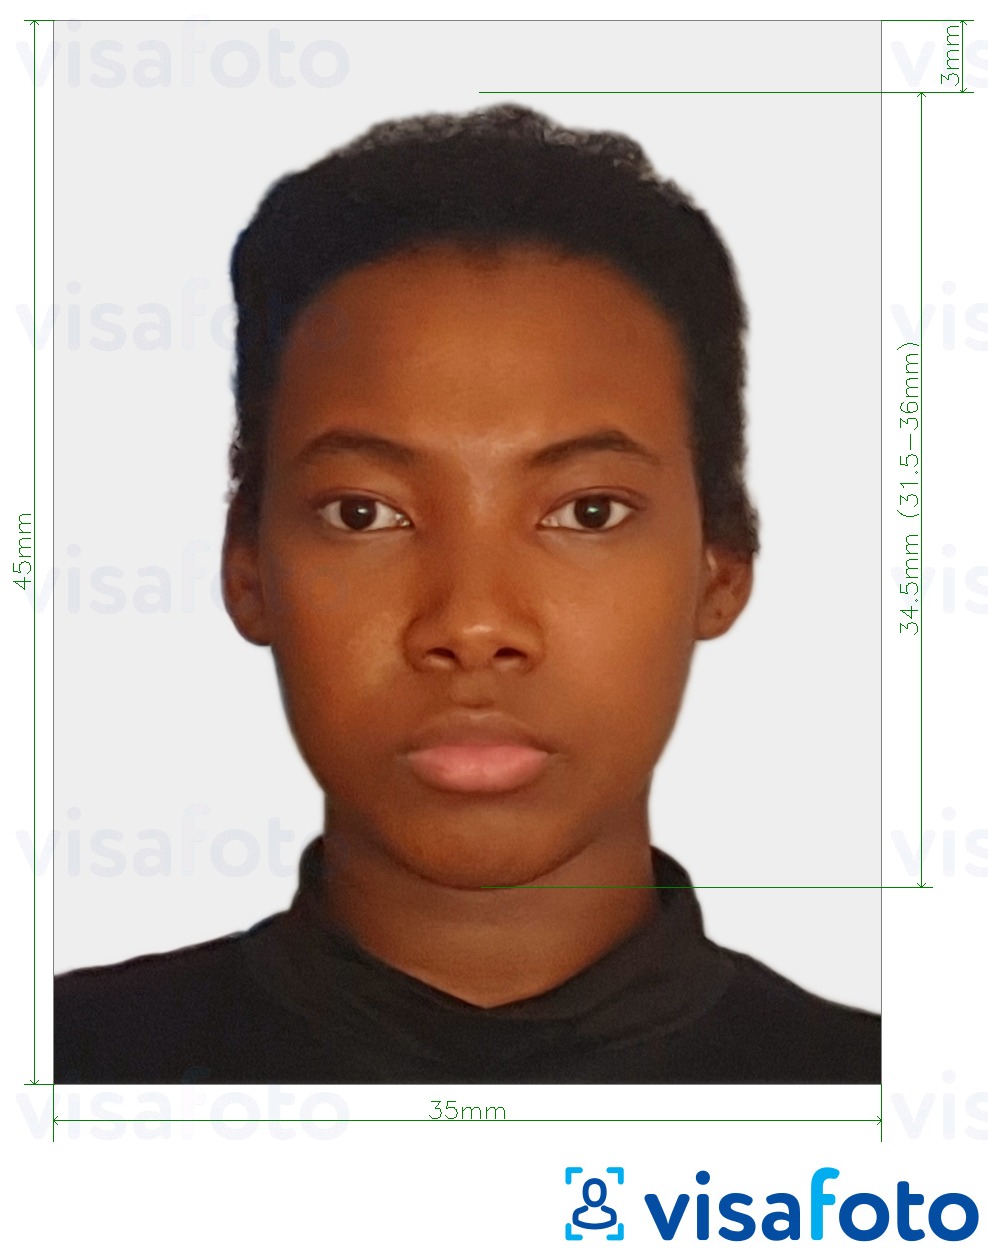 सटीक आकार विनिर्देश के साथ टोगो पासपोर्ट 4.5x3.5 सेमी (45x35 मिमी) के लिए तस्वीर का उदाहरण